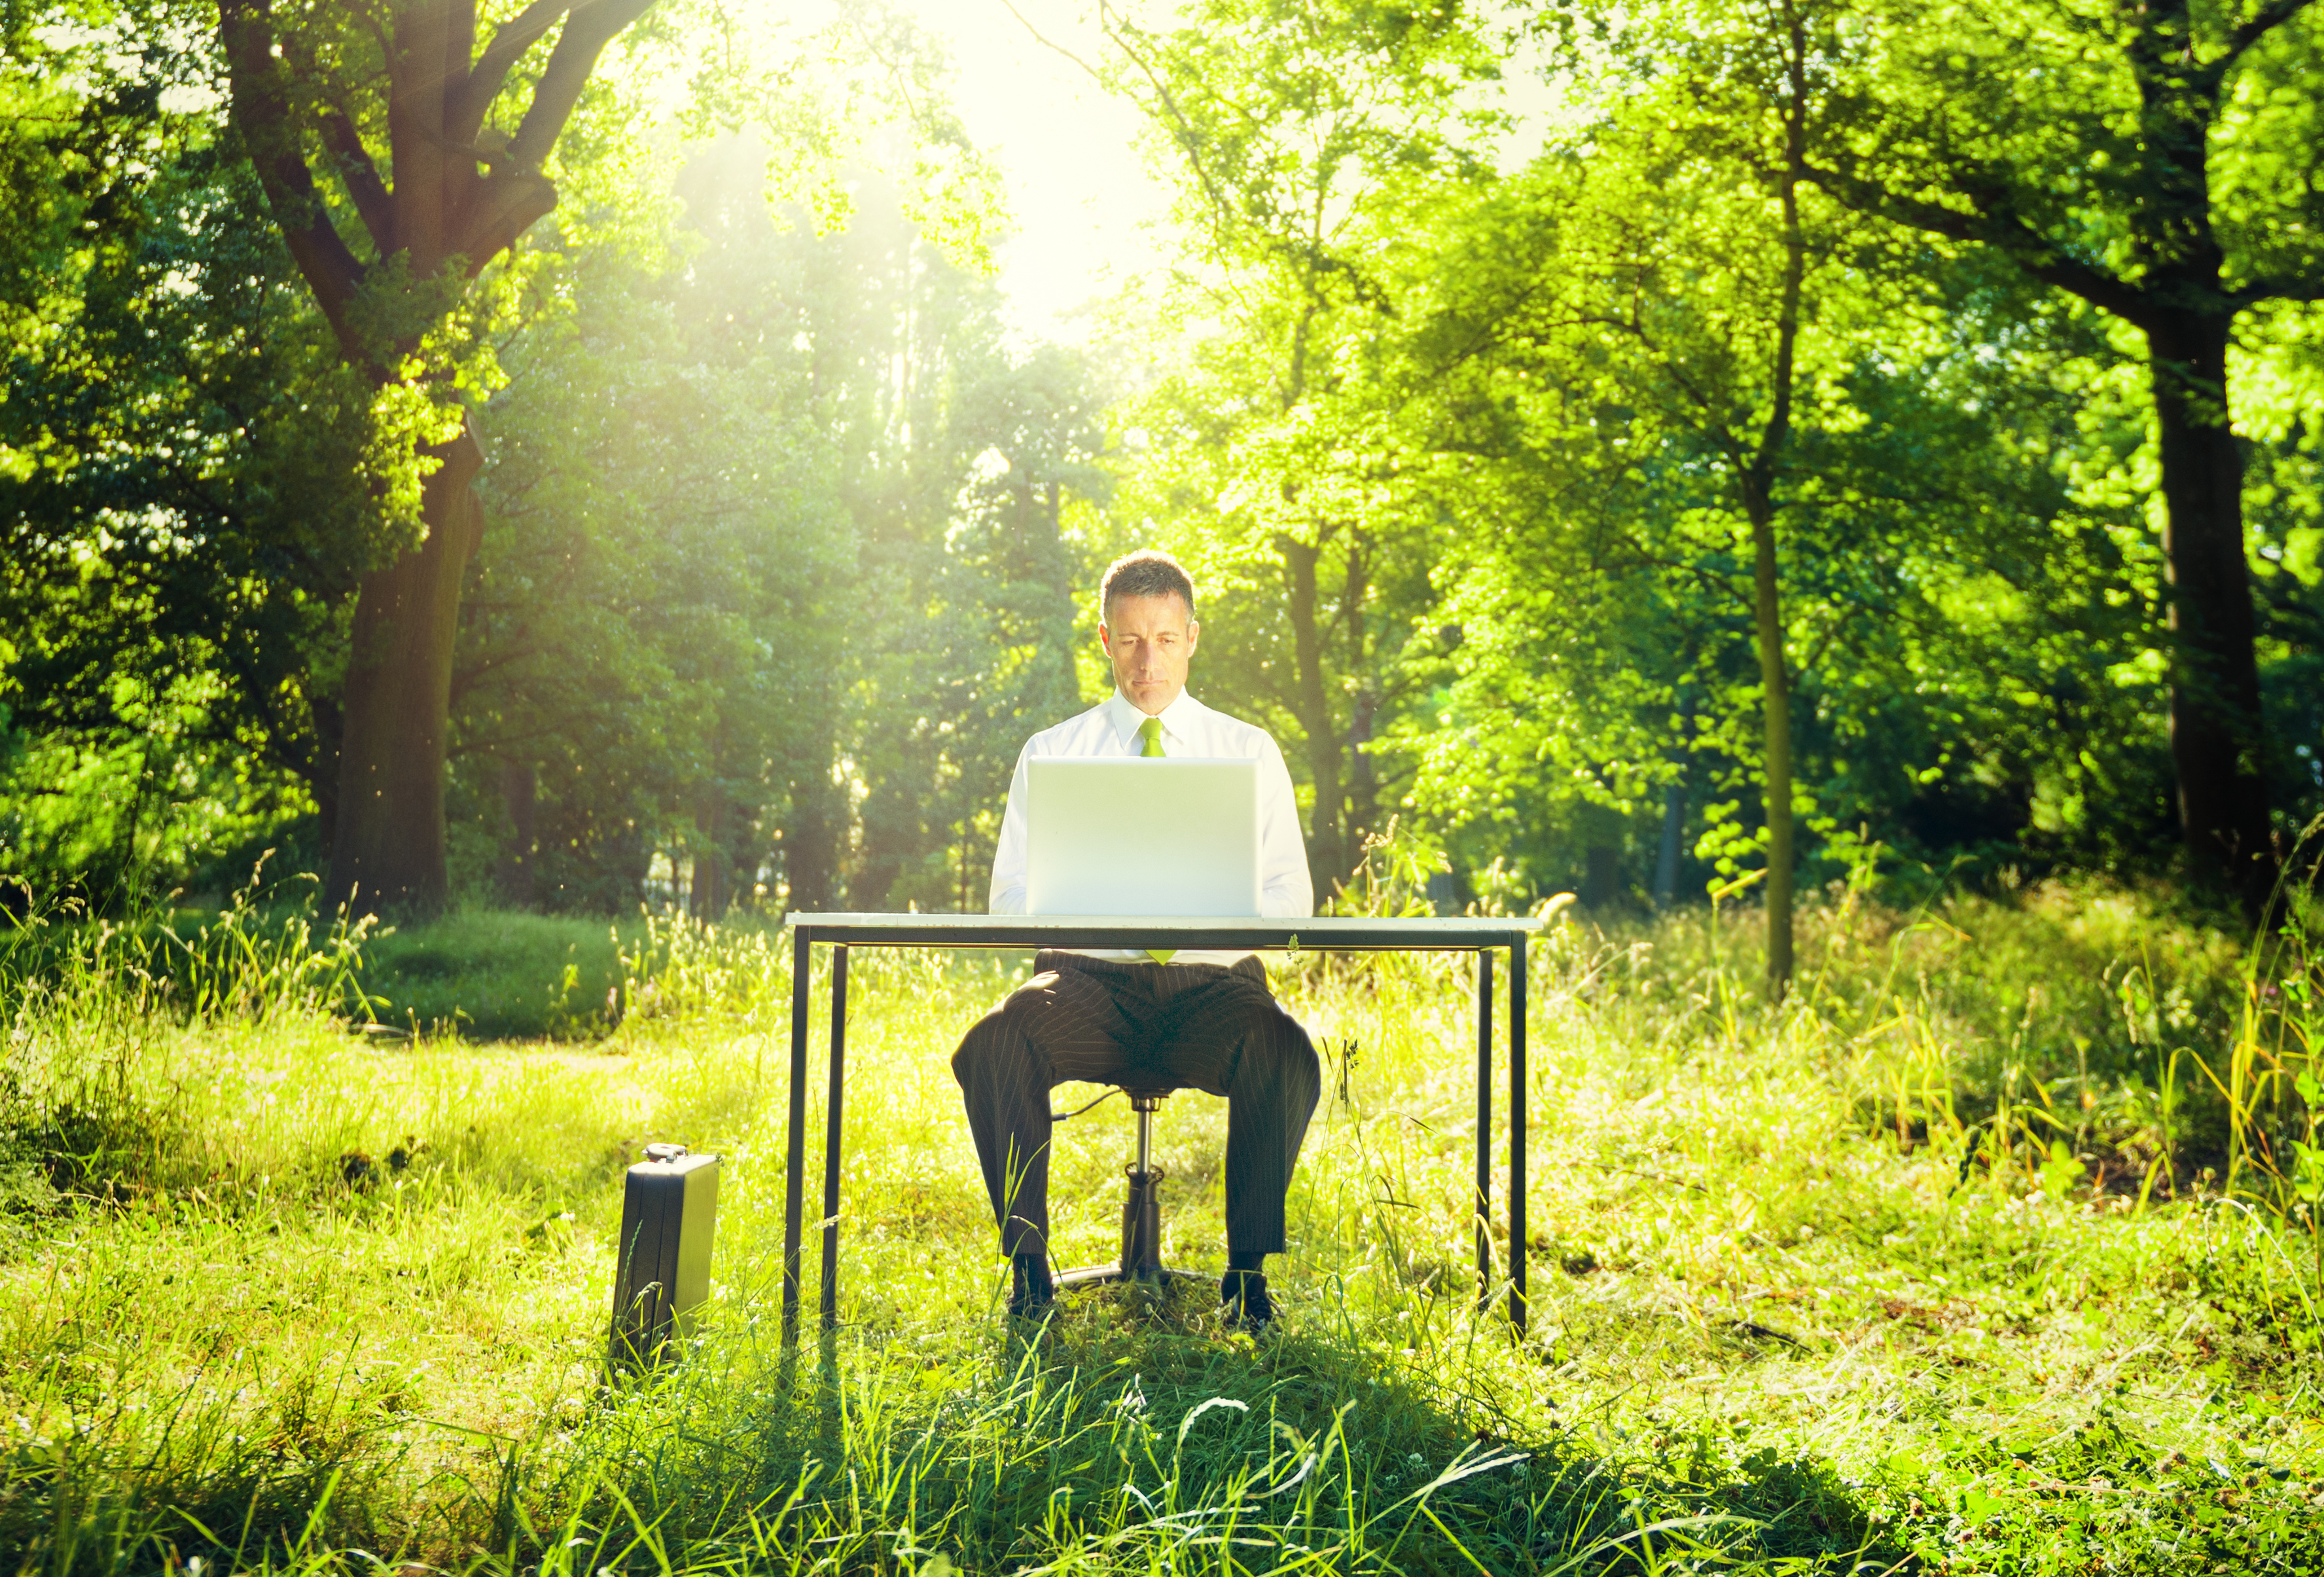 П’ять «зелених» звичок: як стати еко-френдлі в офісі?